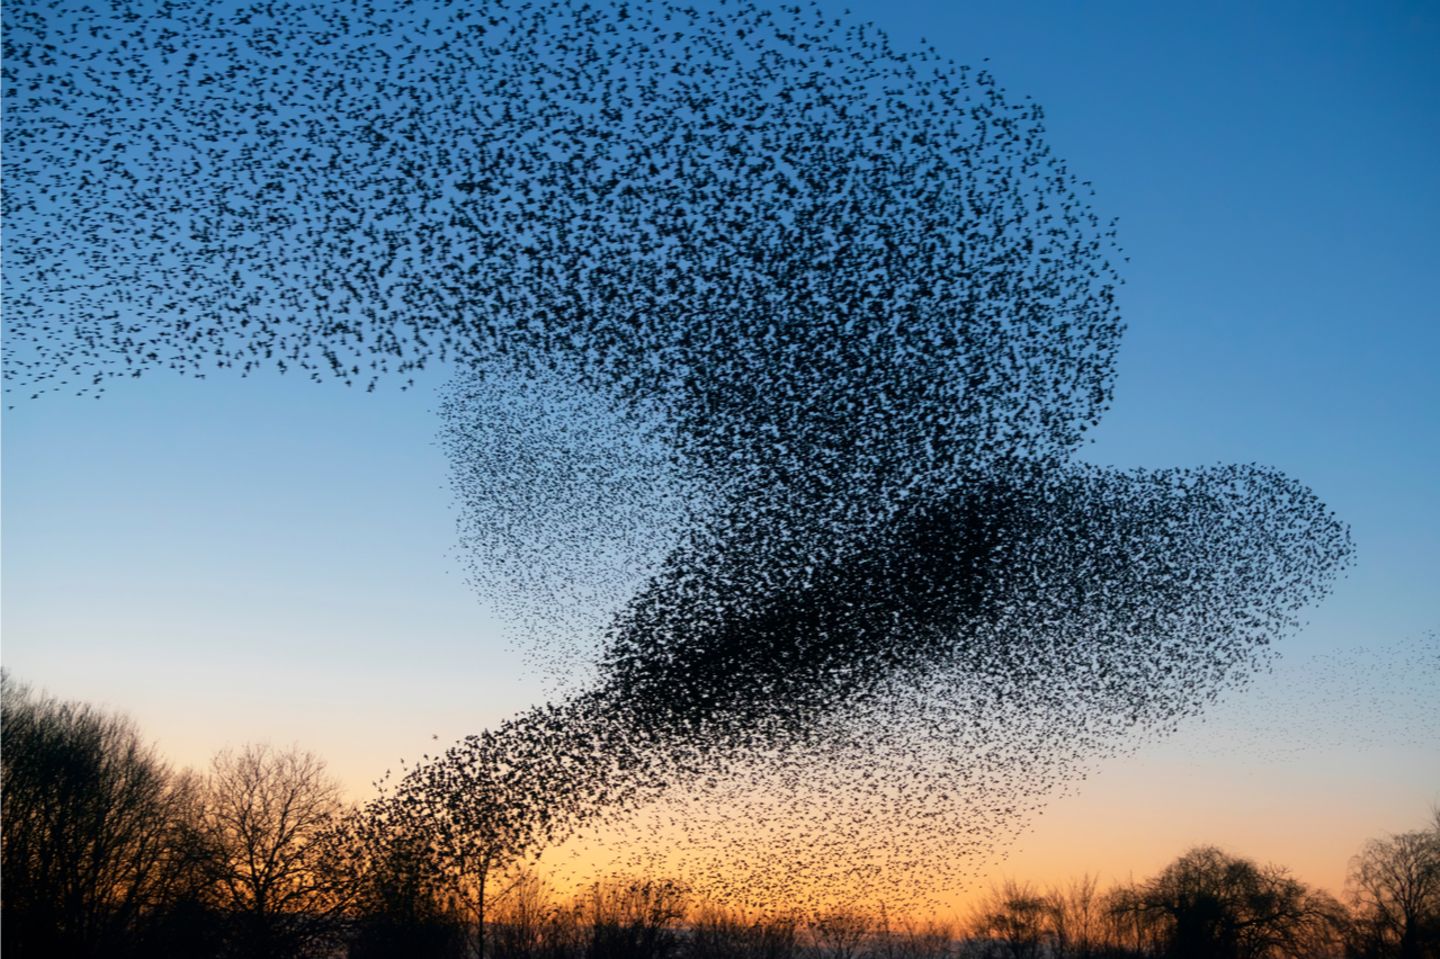 Verhalten: Die Größe eines Vogelschwarms hängt offenbar von der Informationsübertragung zwischen den Individuen ab